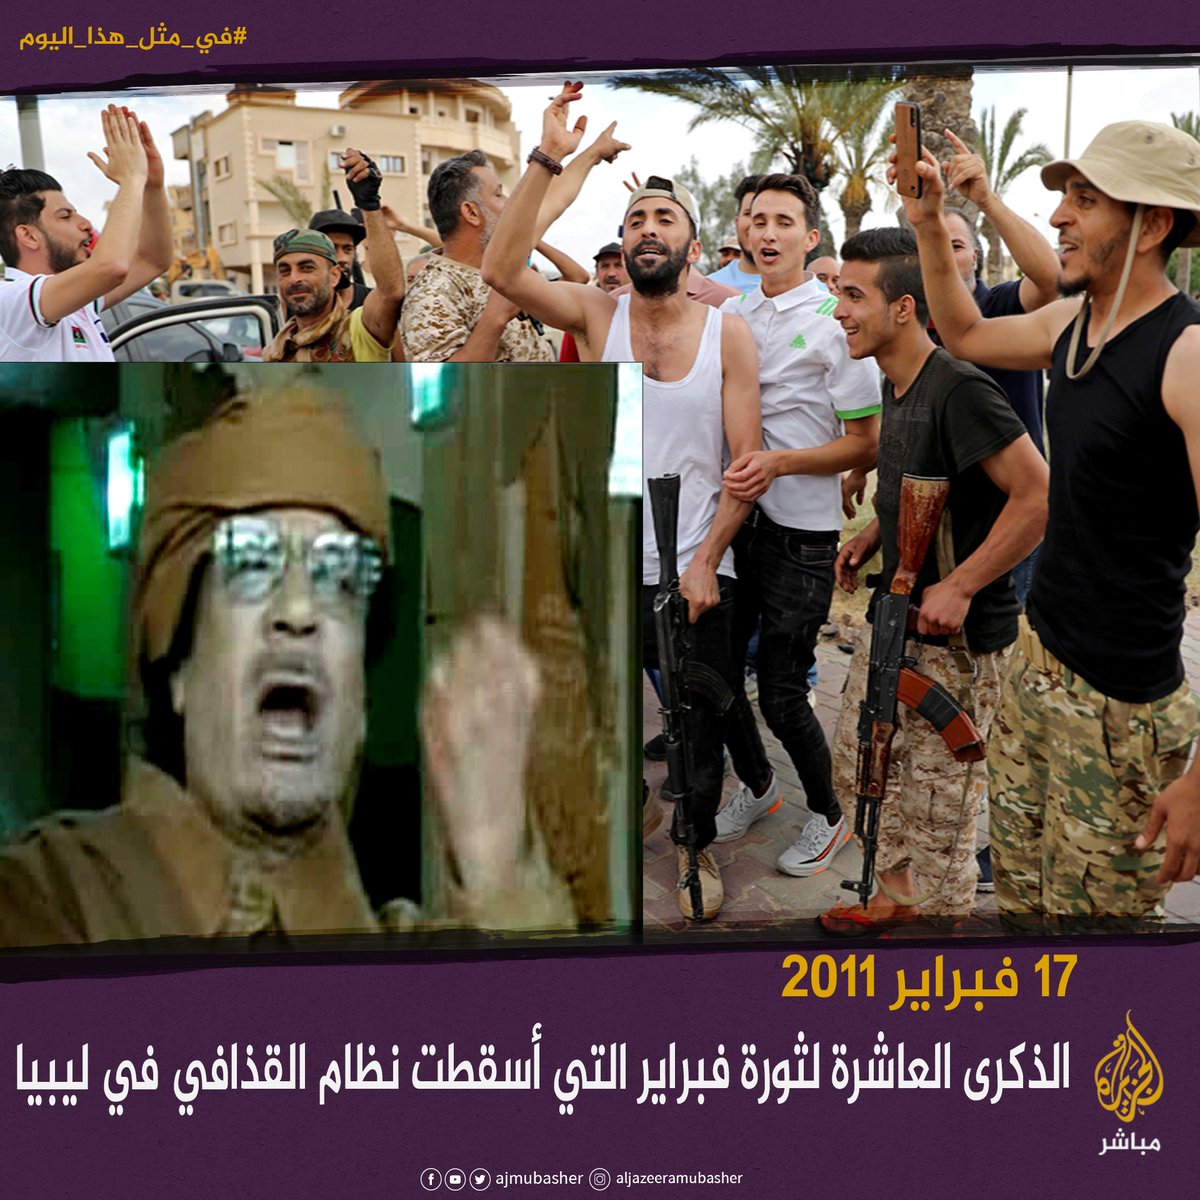 حدث في مثل هذا اليوم 17 فبراير 2011 الثورة الليبية التي أسقطت نظام معمر القذافي ليبيا